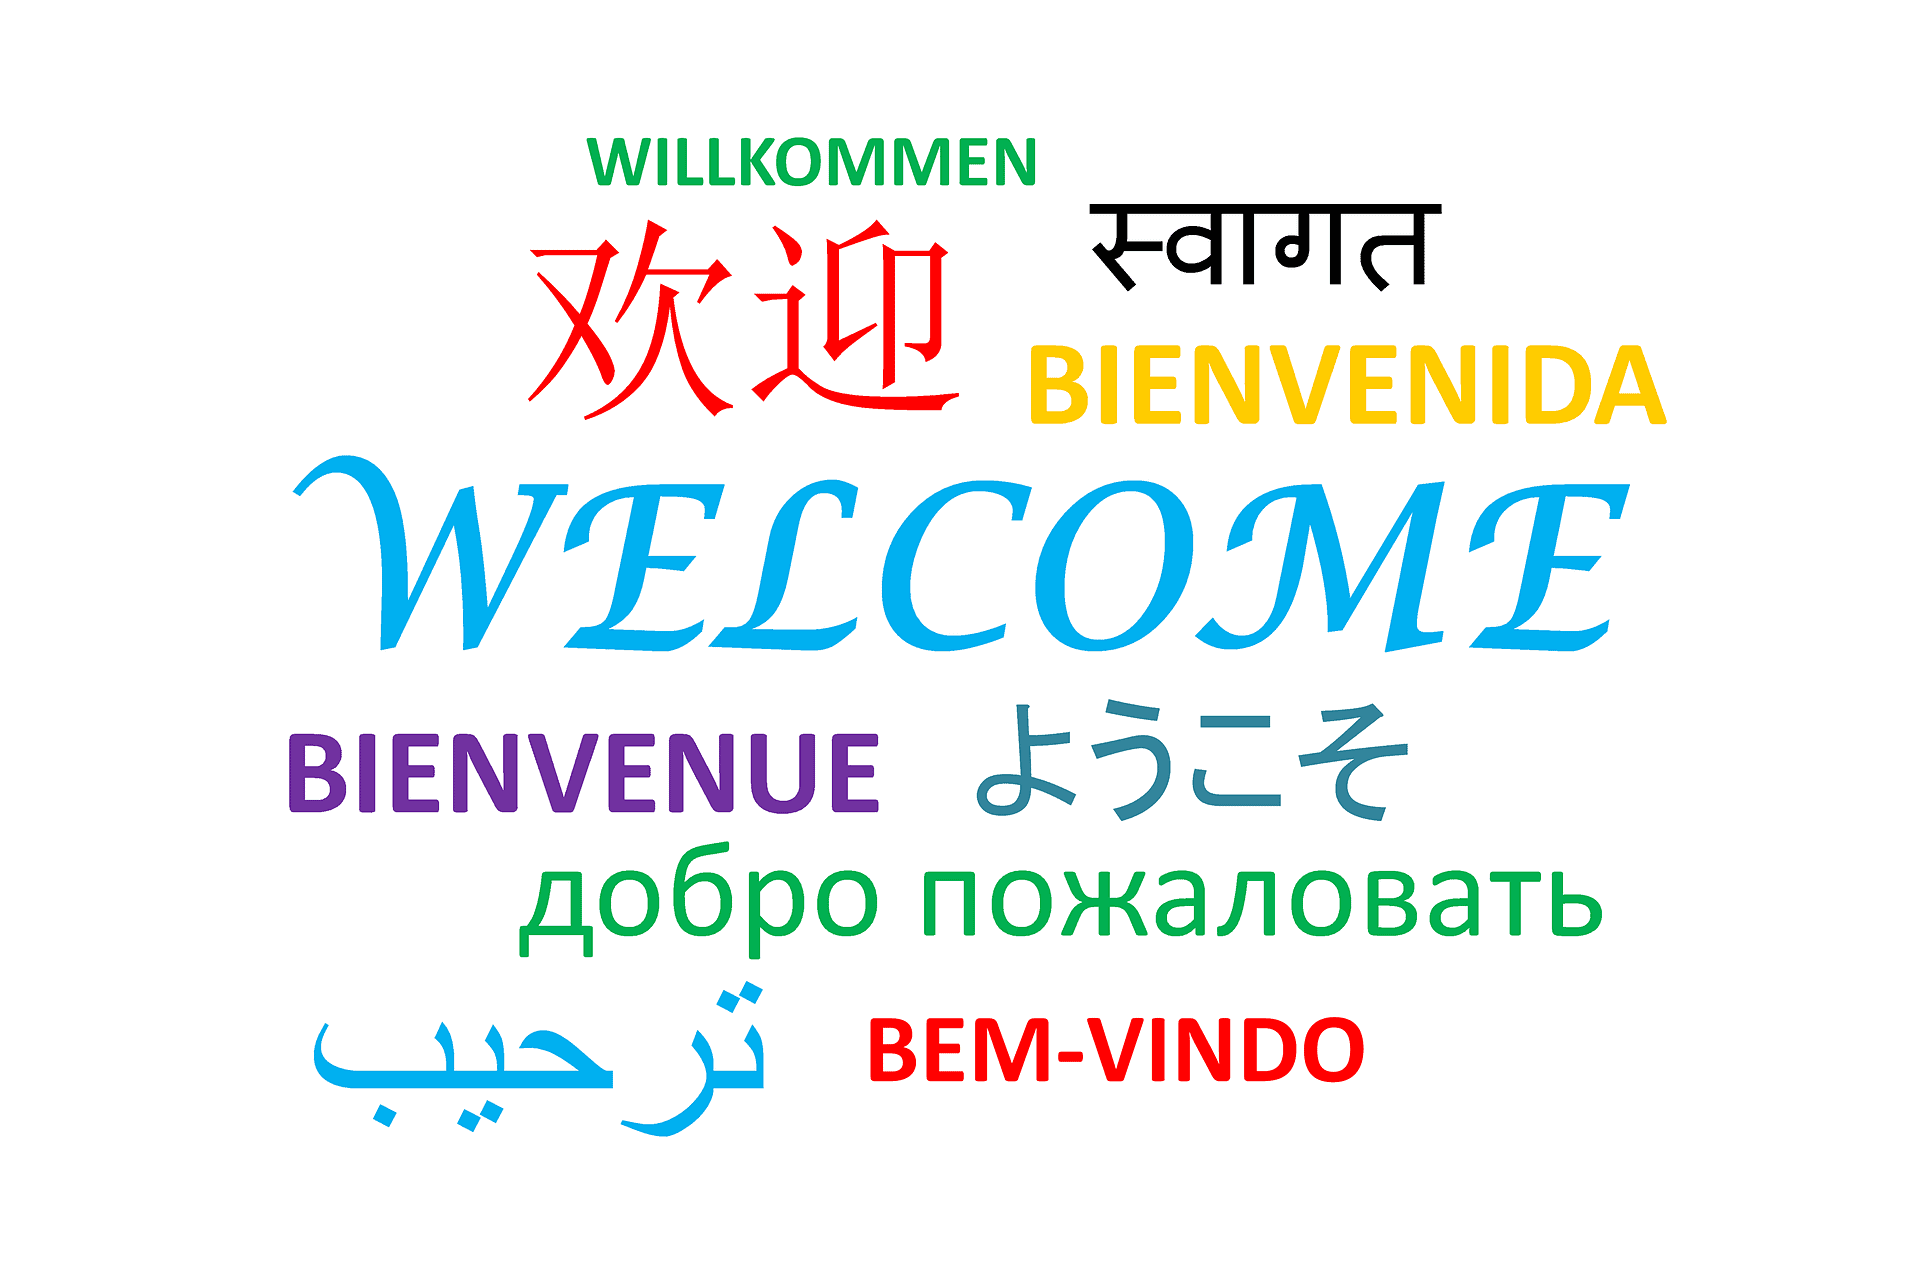 تصميم متجر متعدد اللغات للبيع فى كل الدول